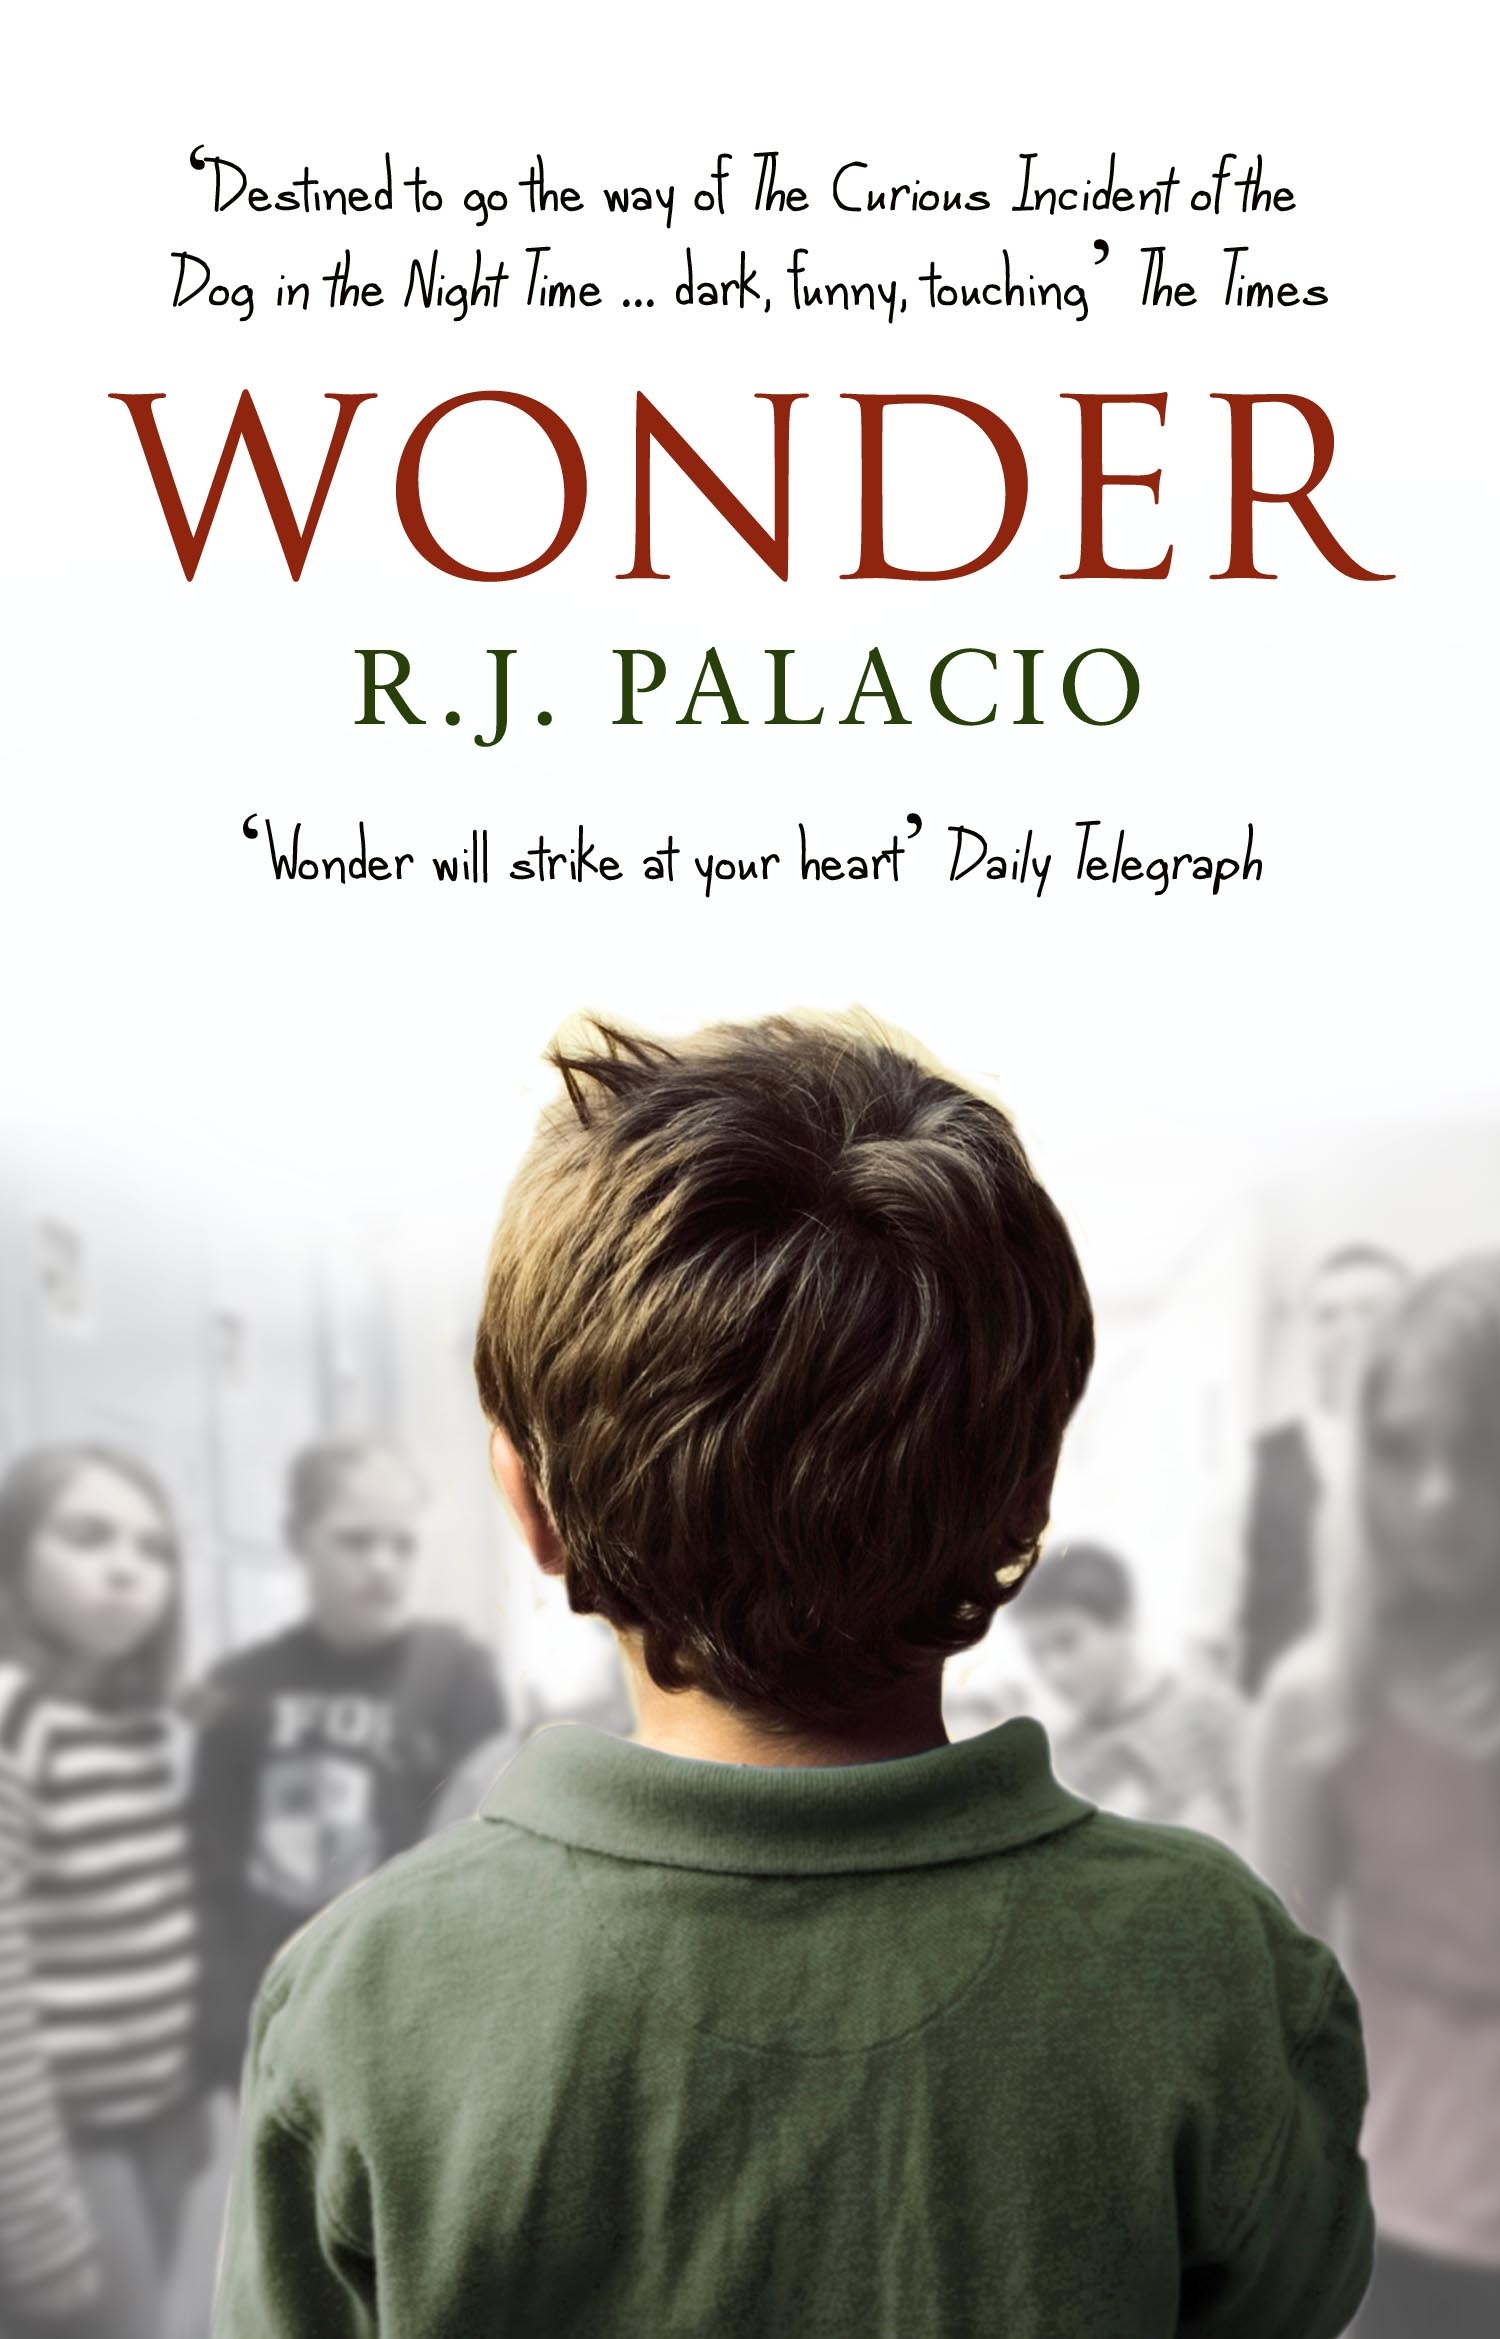 Wonder, by R.J. Palacio